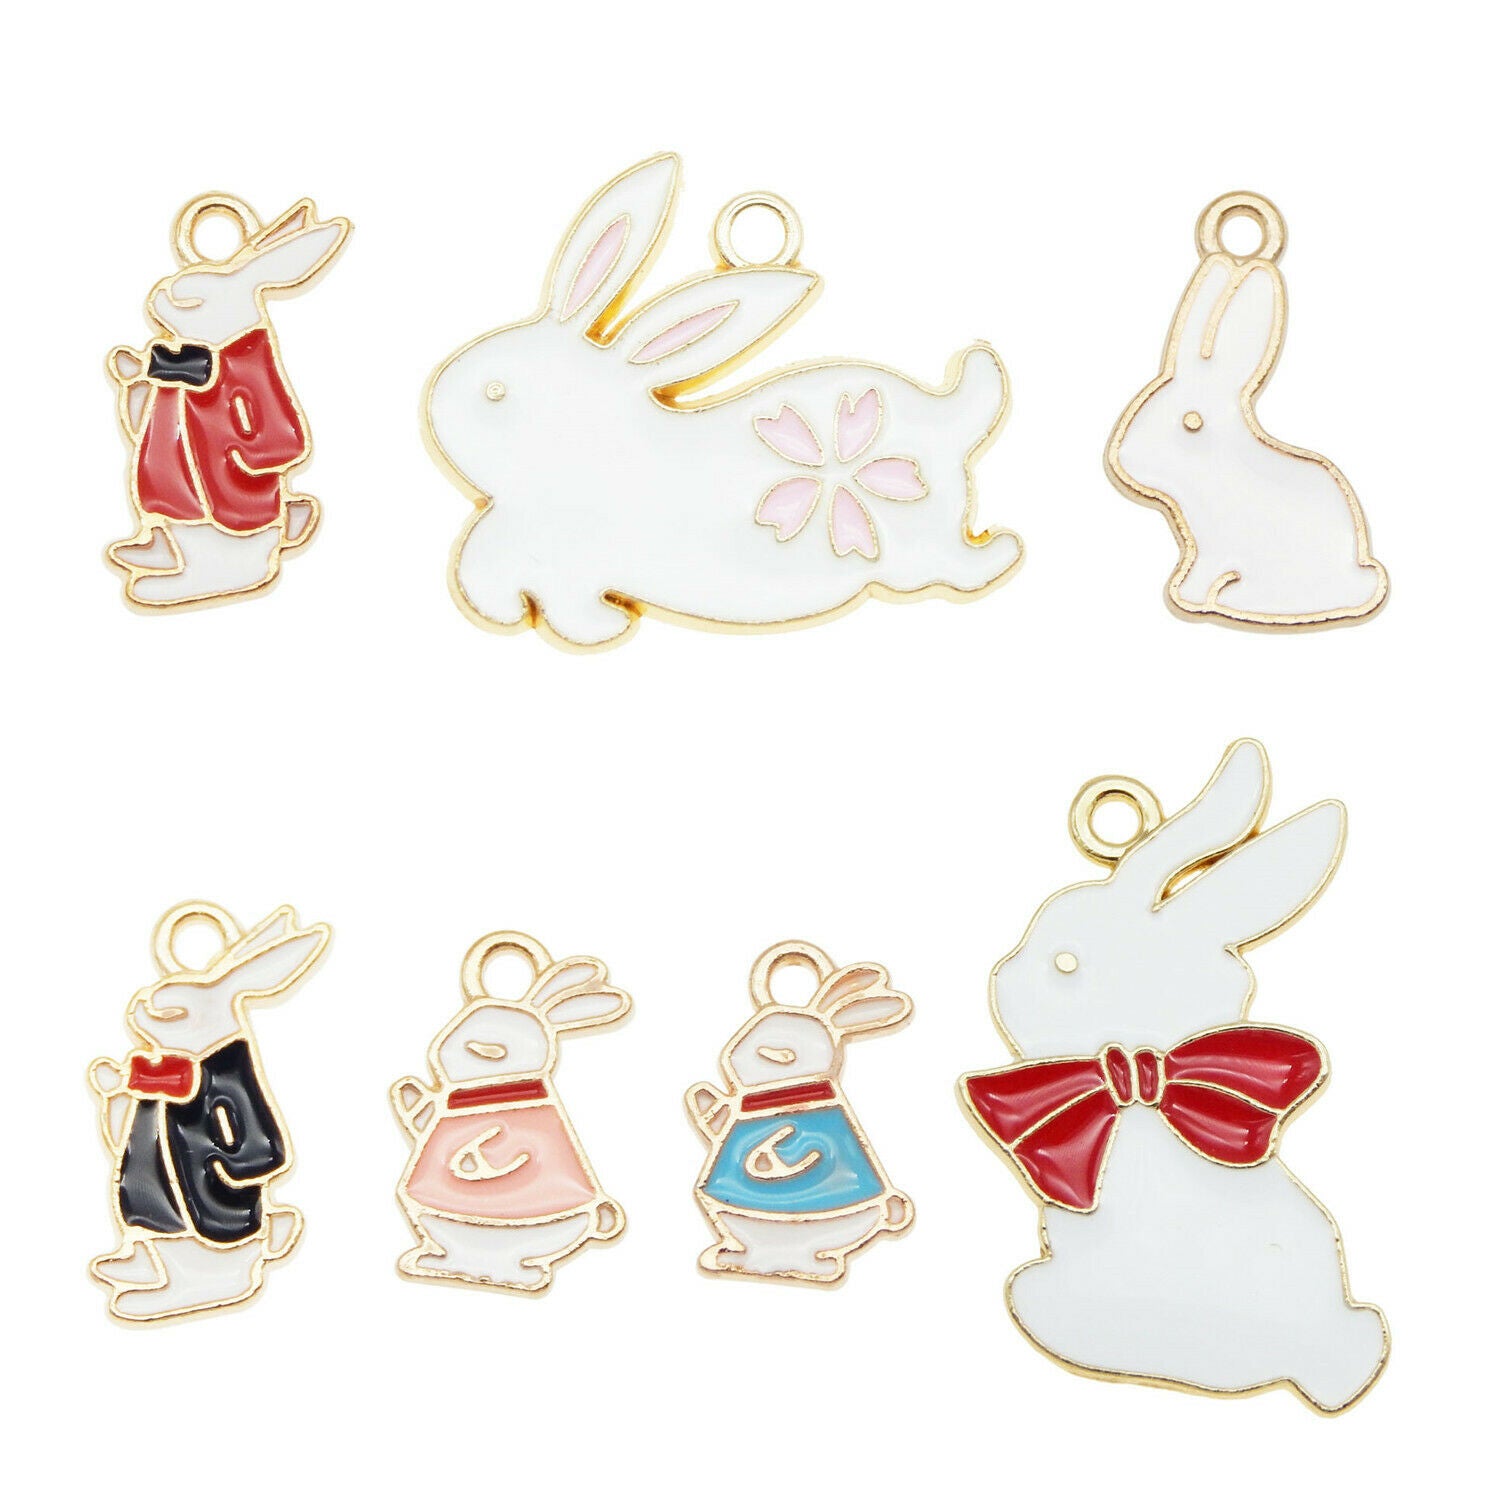 Wholesale Enamel Mixed Rabbit bunny Pendant Charms for Necklace Bracelet 21pcs